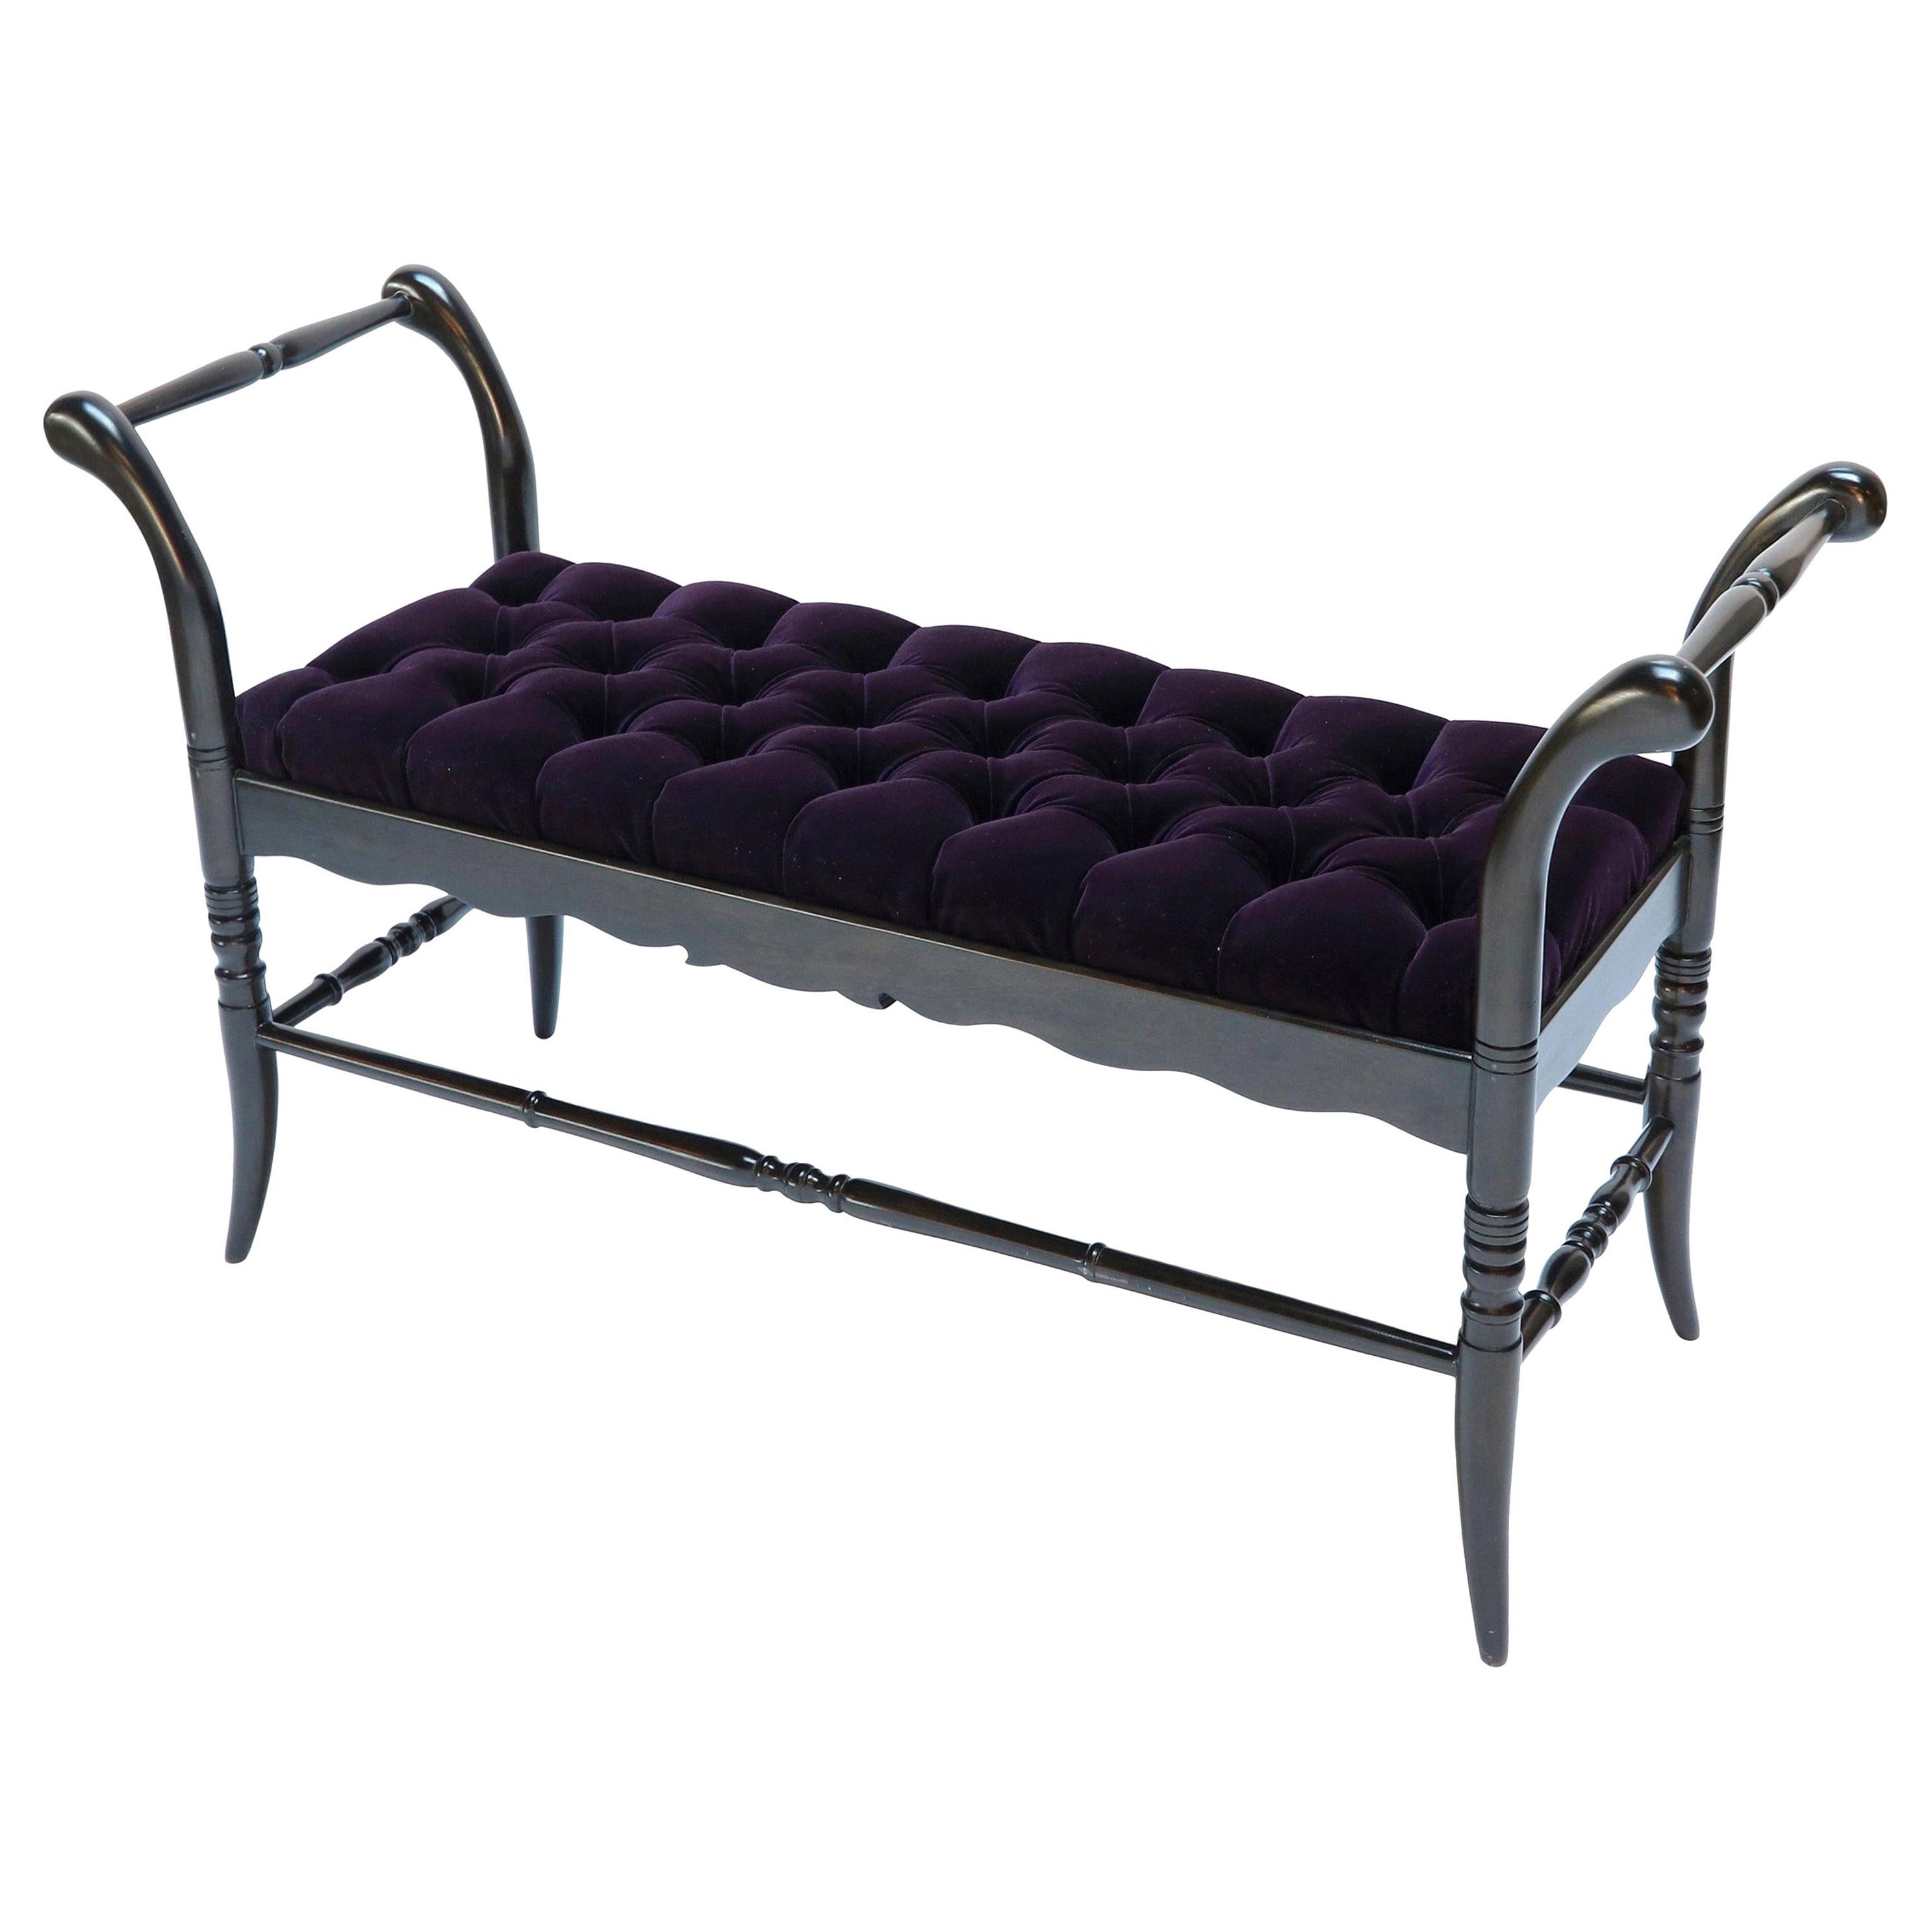 Ebonized Black Tufted Purple Velvet Italian Wood Bench, 1940s For Sale